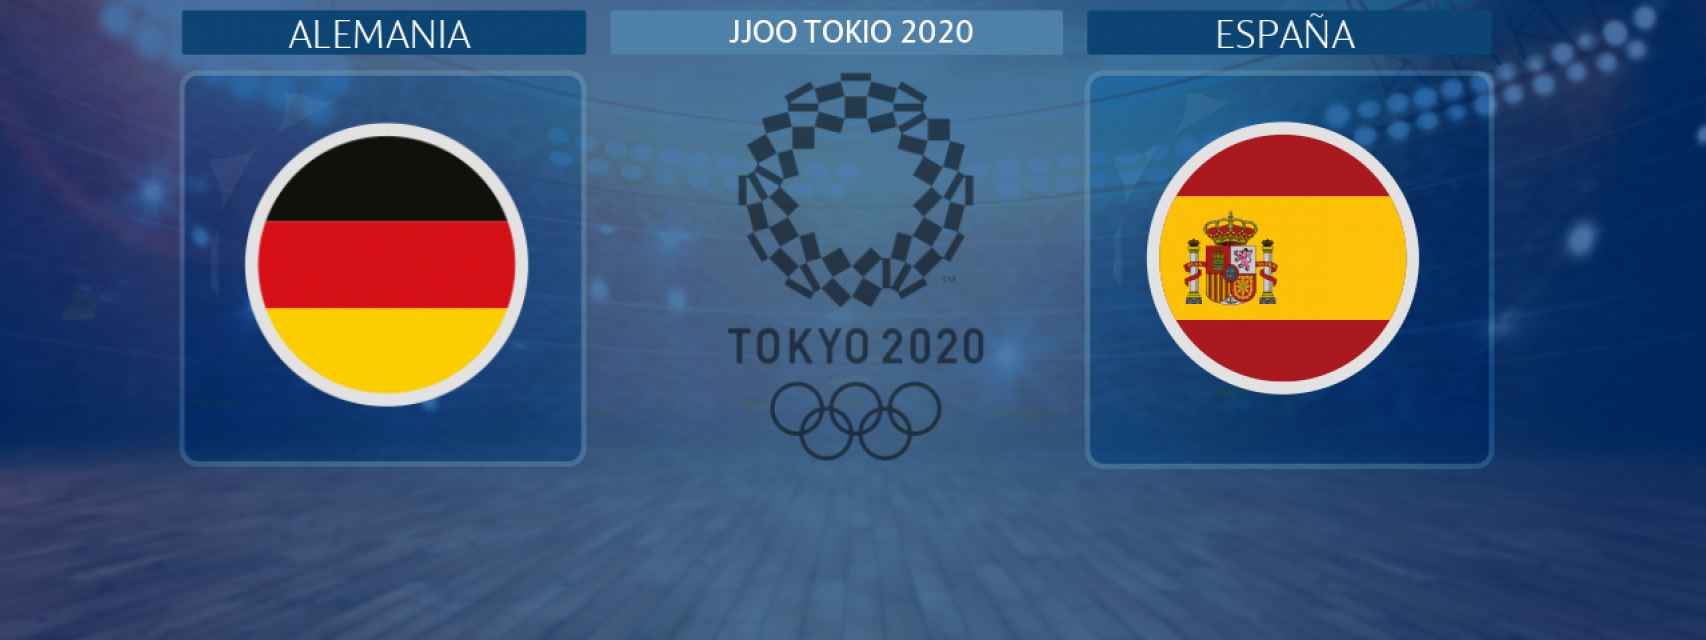 Alemania - España, partido de balonmano masculino de los JJOO Tokio 2020